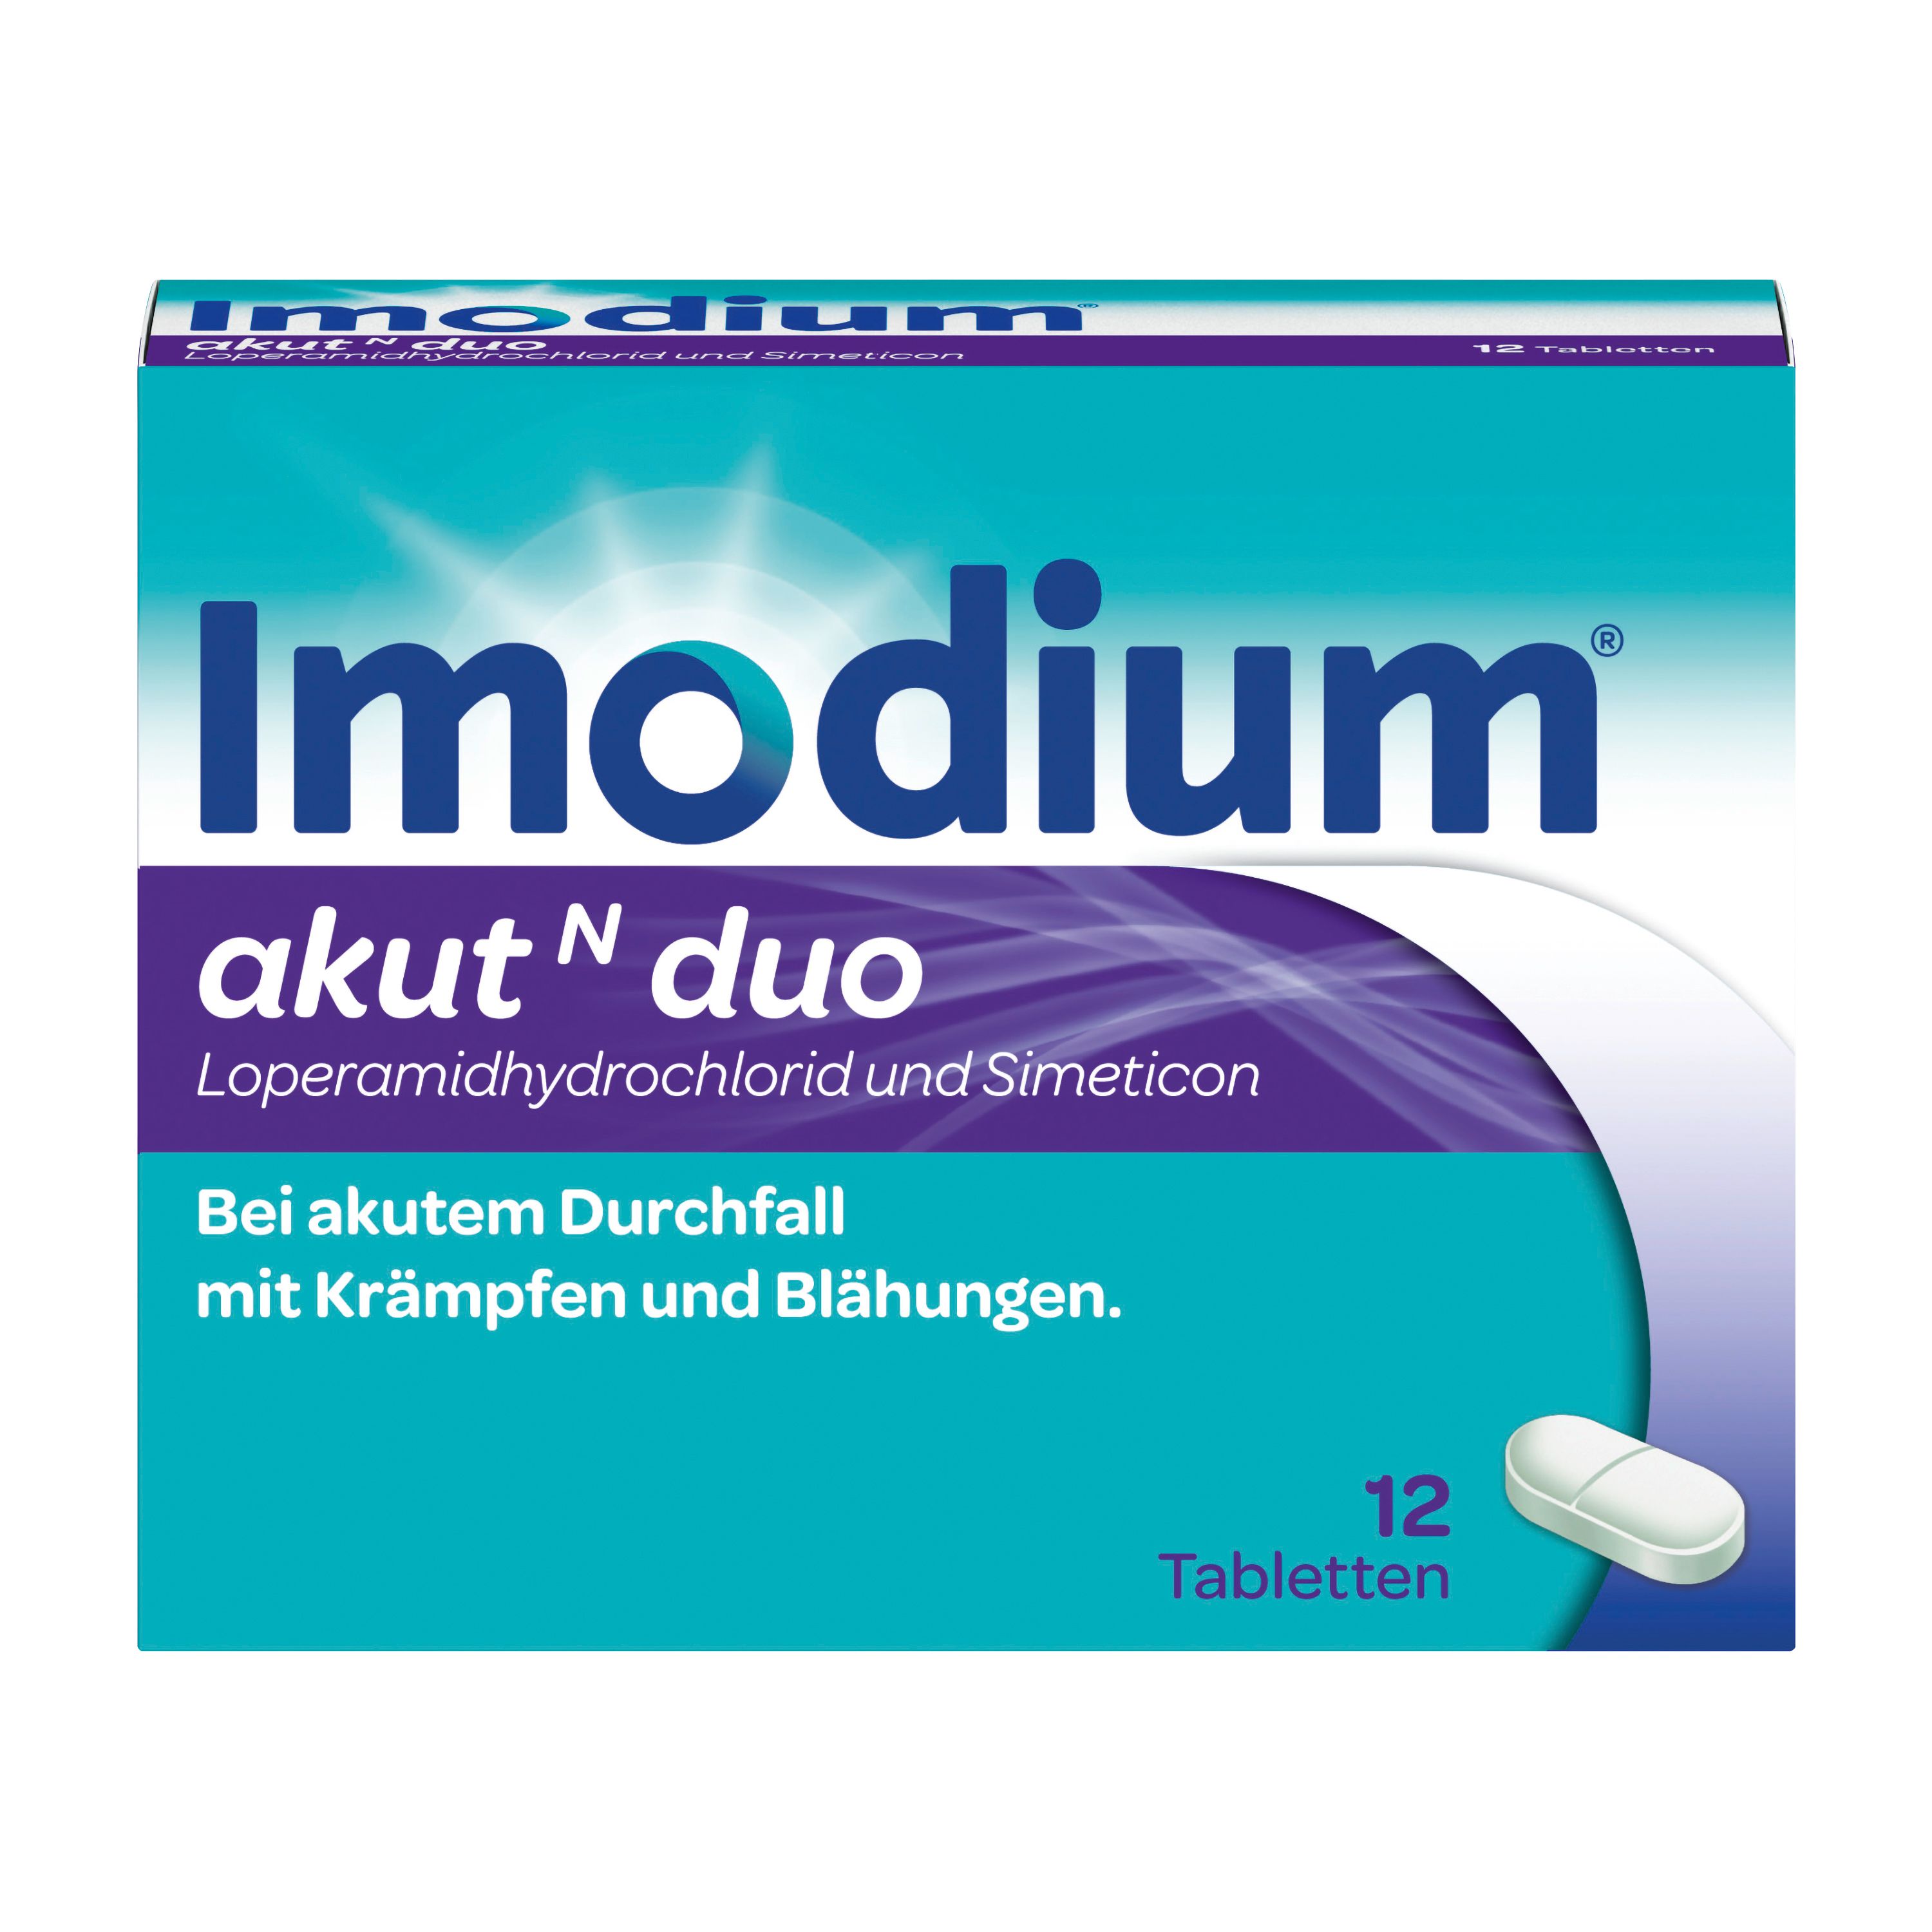 Imodium ® akut N duo 